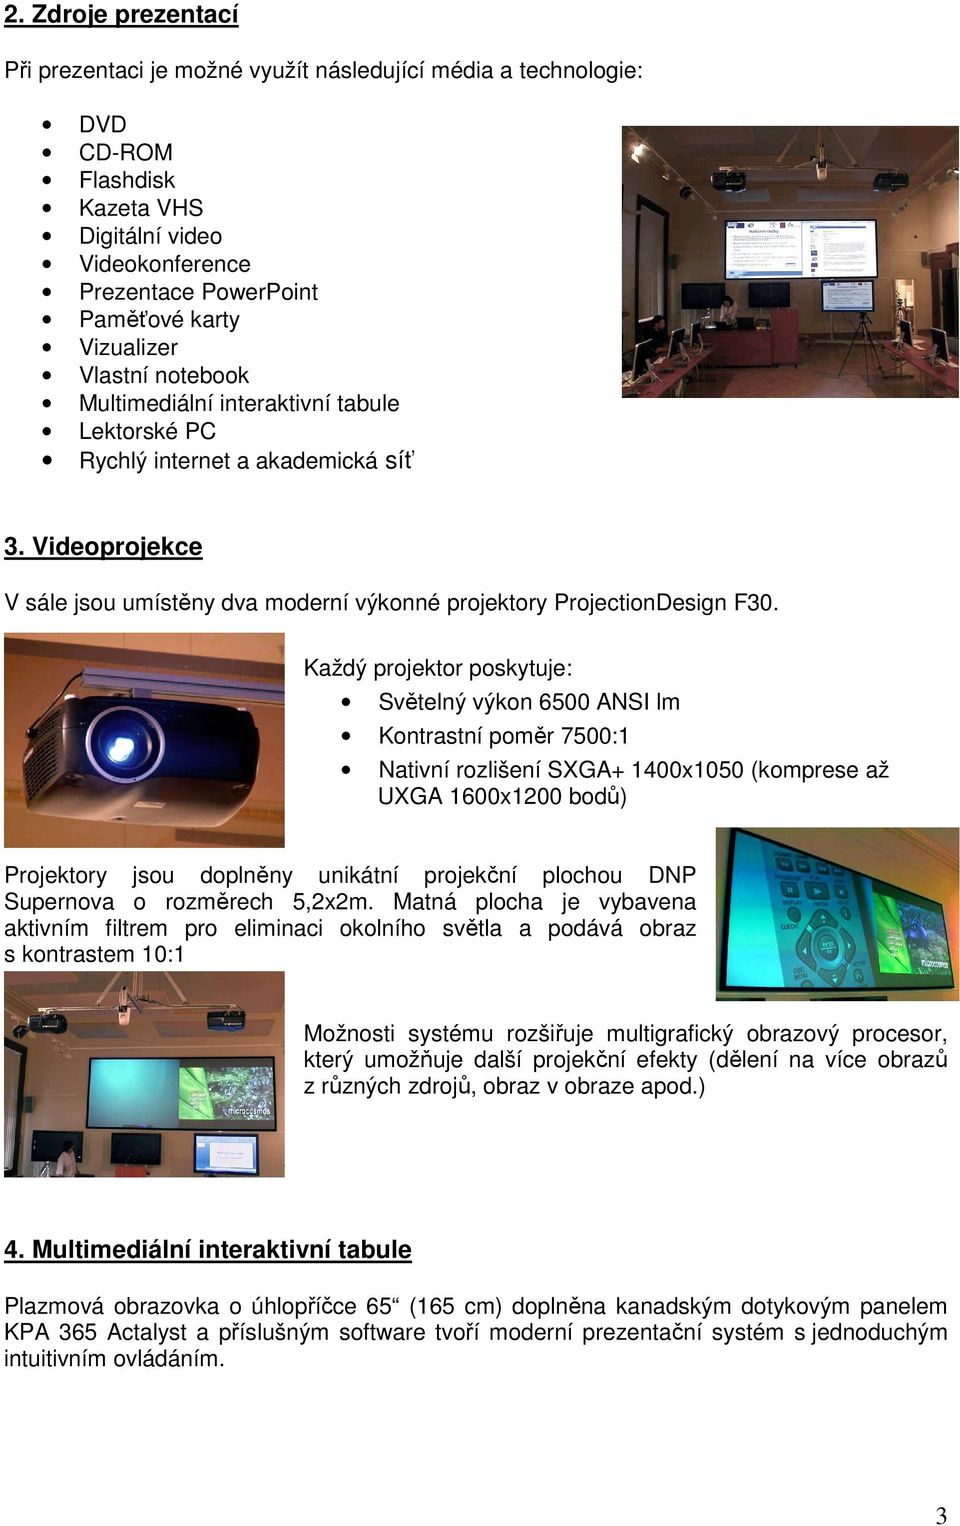 Každý projektor poskytuje: Světelný výkon 6500 ANSI lm Kontrastní poměr 7500:1 Nativní rozlišení SXGA+ 1400x1050 (komprese až UXGA 1600x1200 bodů) Projektory jsou doplněny unikátní projekční plochou